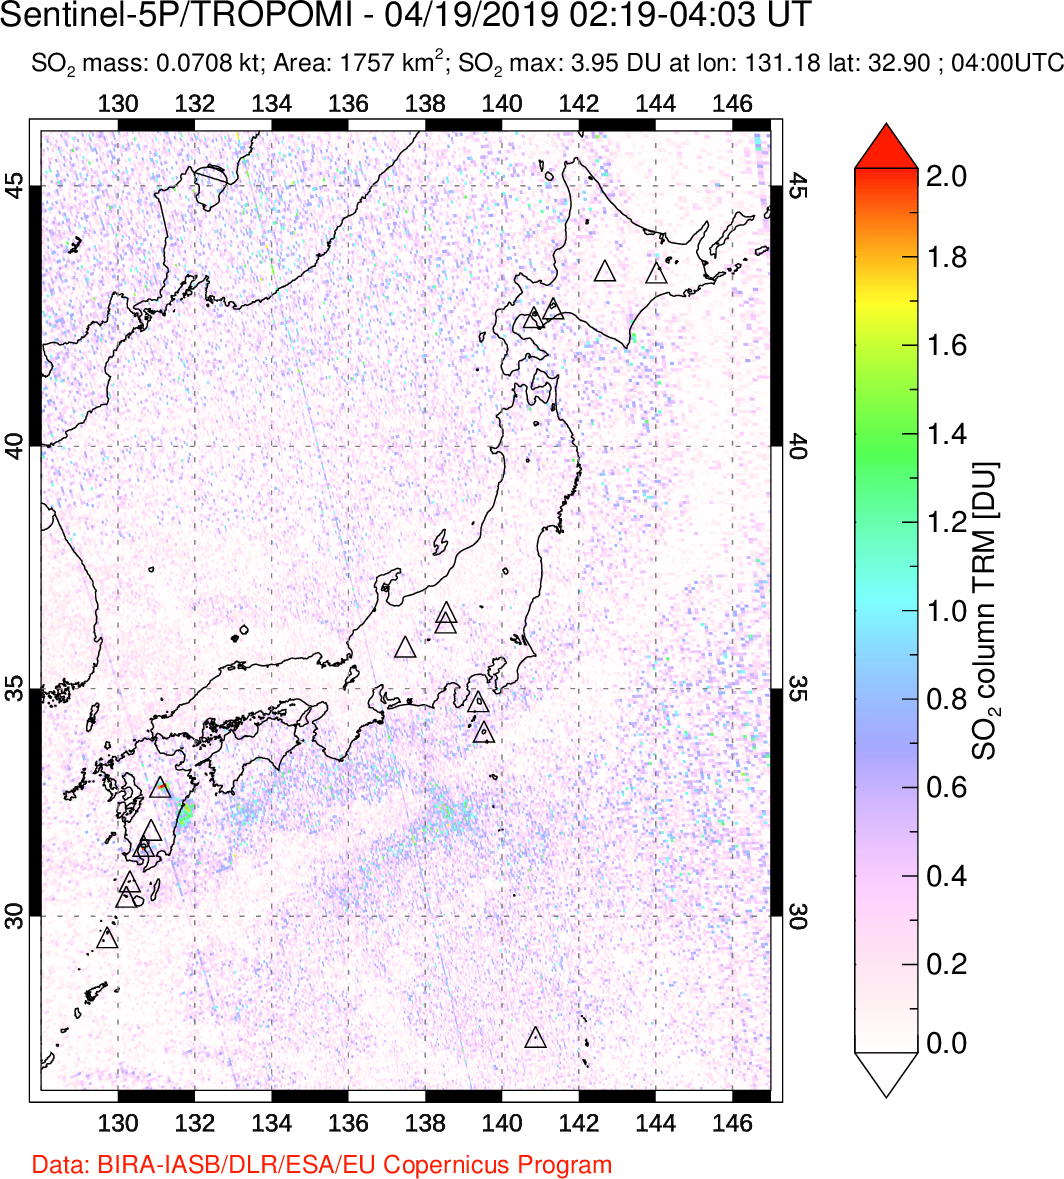 A sulfur dioxide image over Japan on Apr 19, 2019.